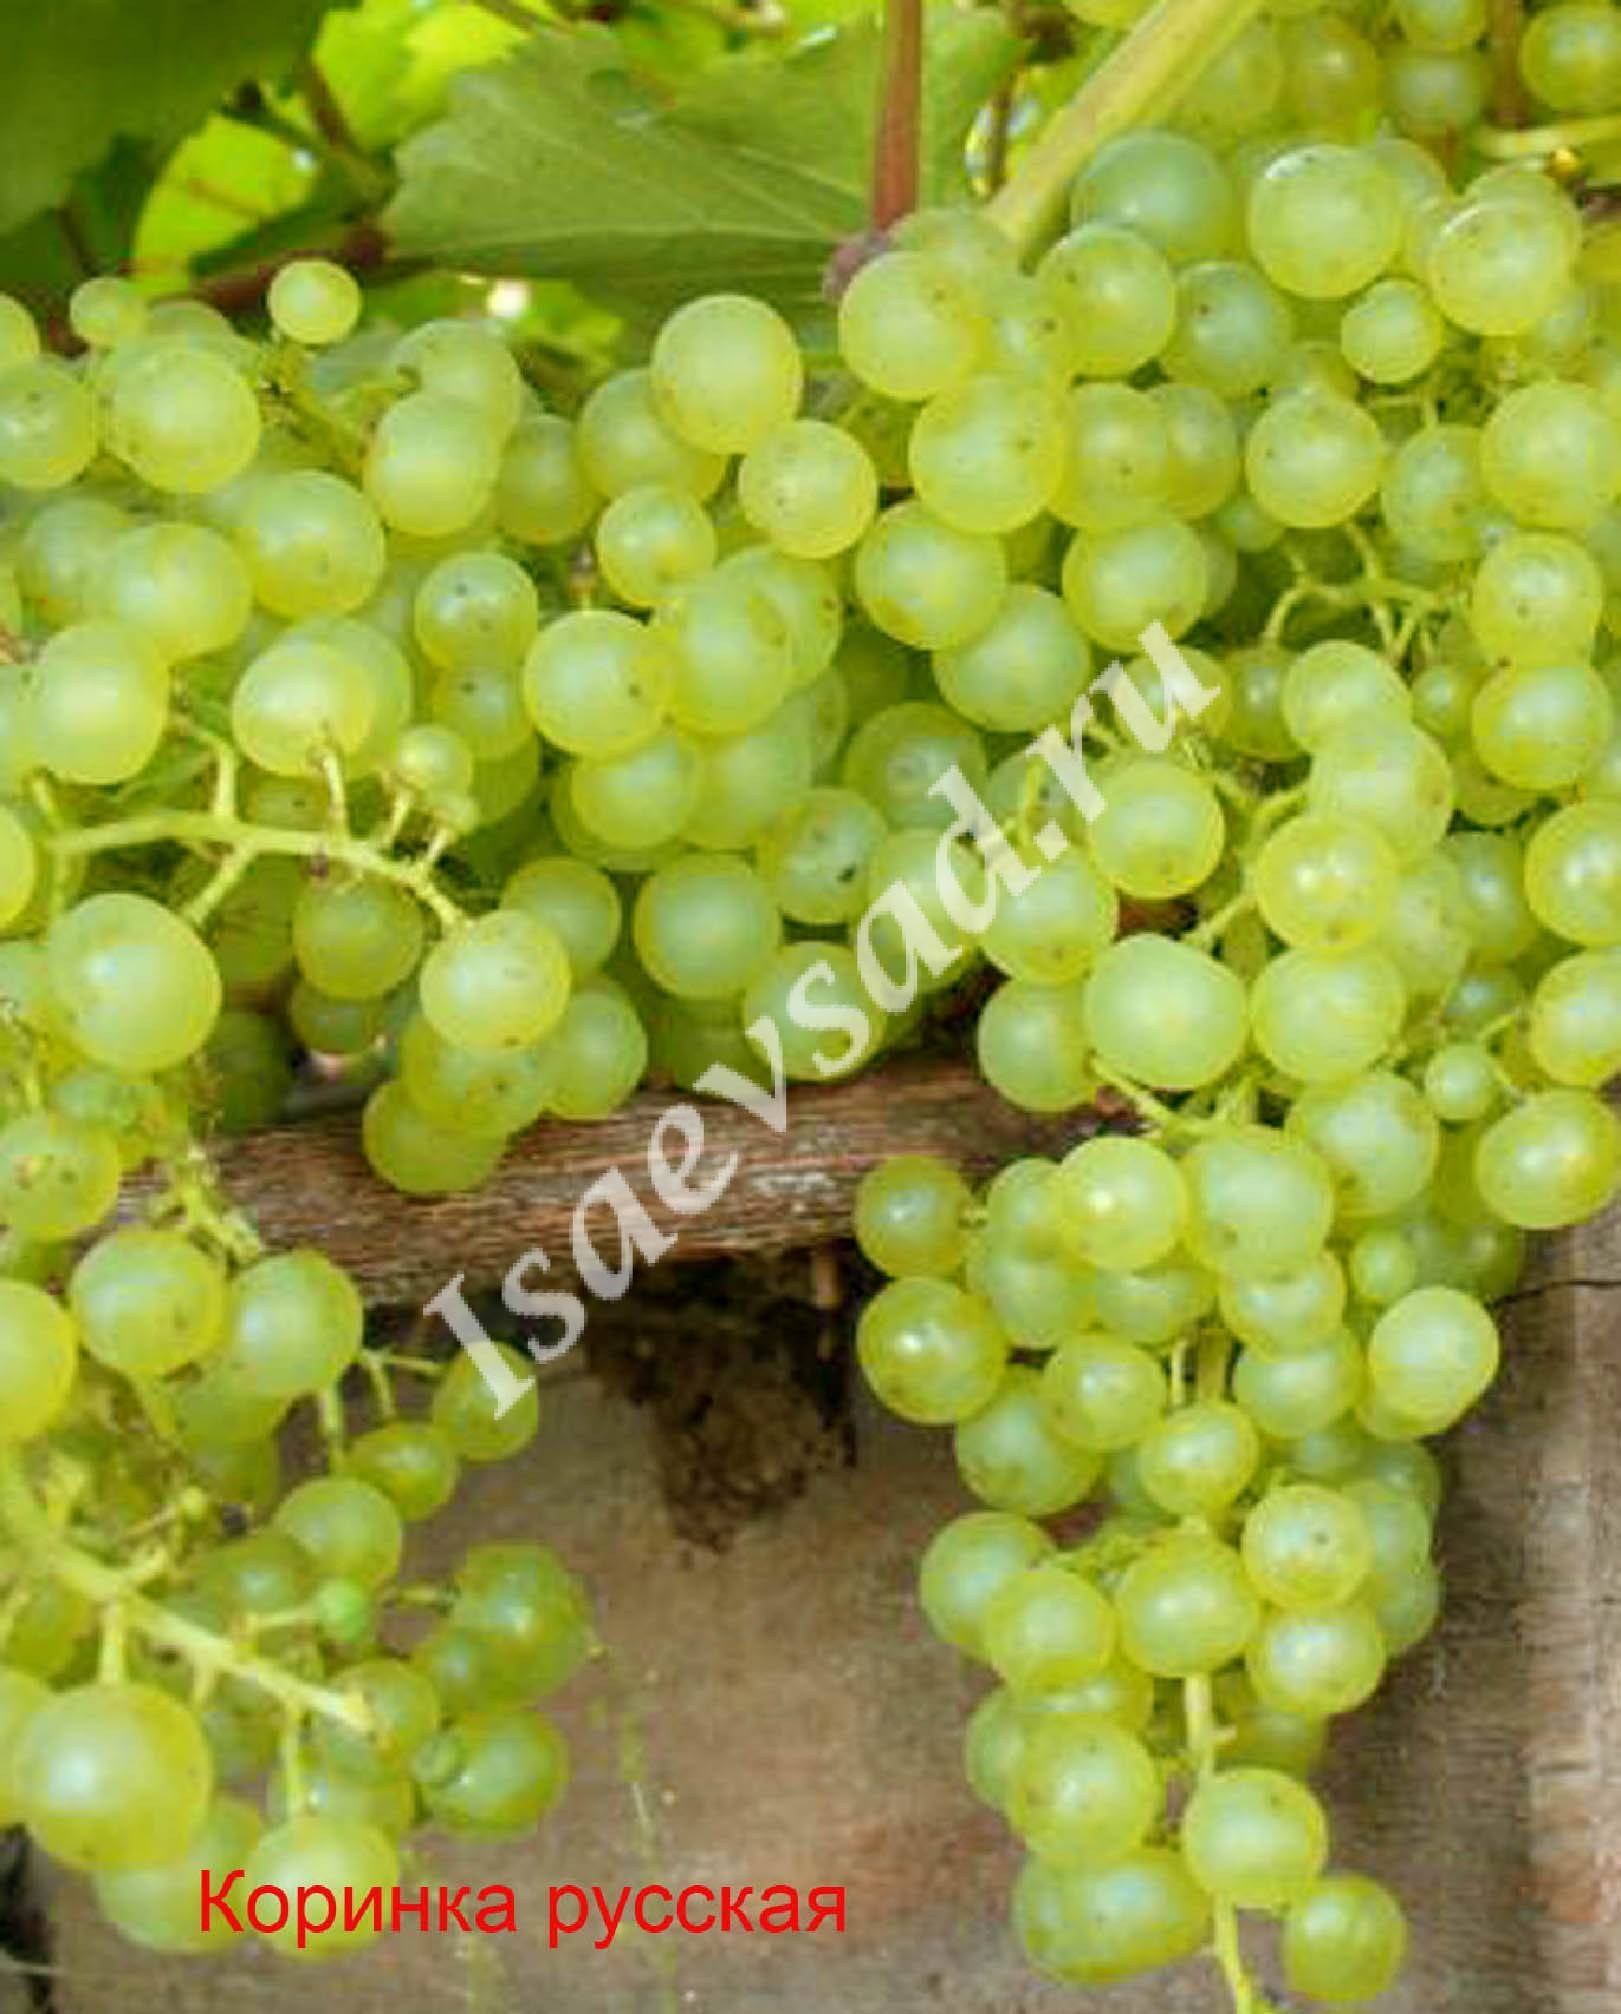 Виноград коринка русская: описание сорта, правила выращивания и ухода